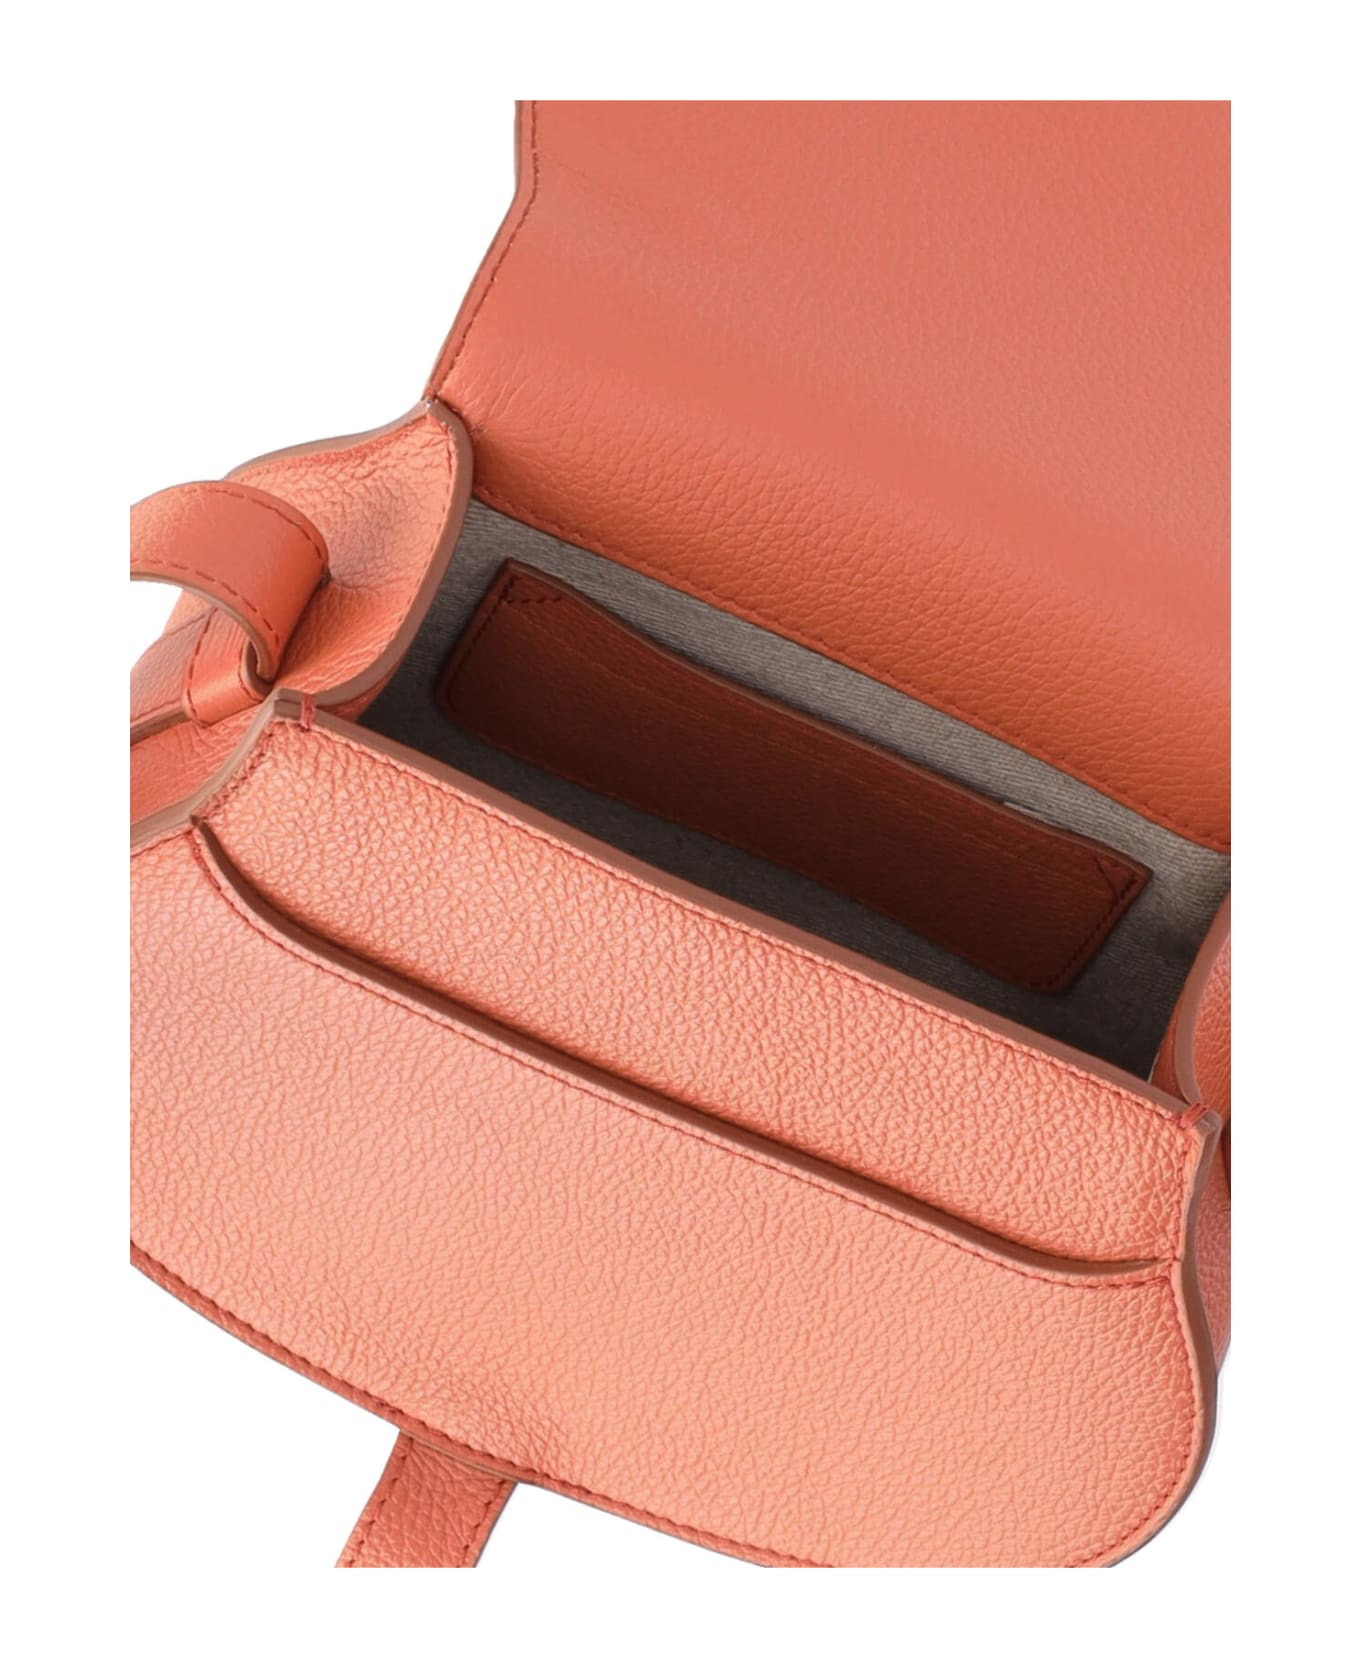 Chloé Shoulder Bag - Orange